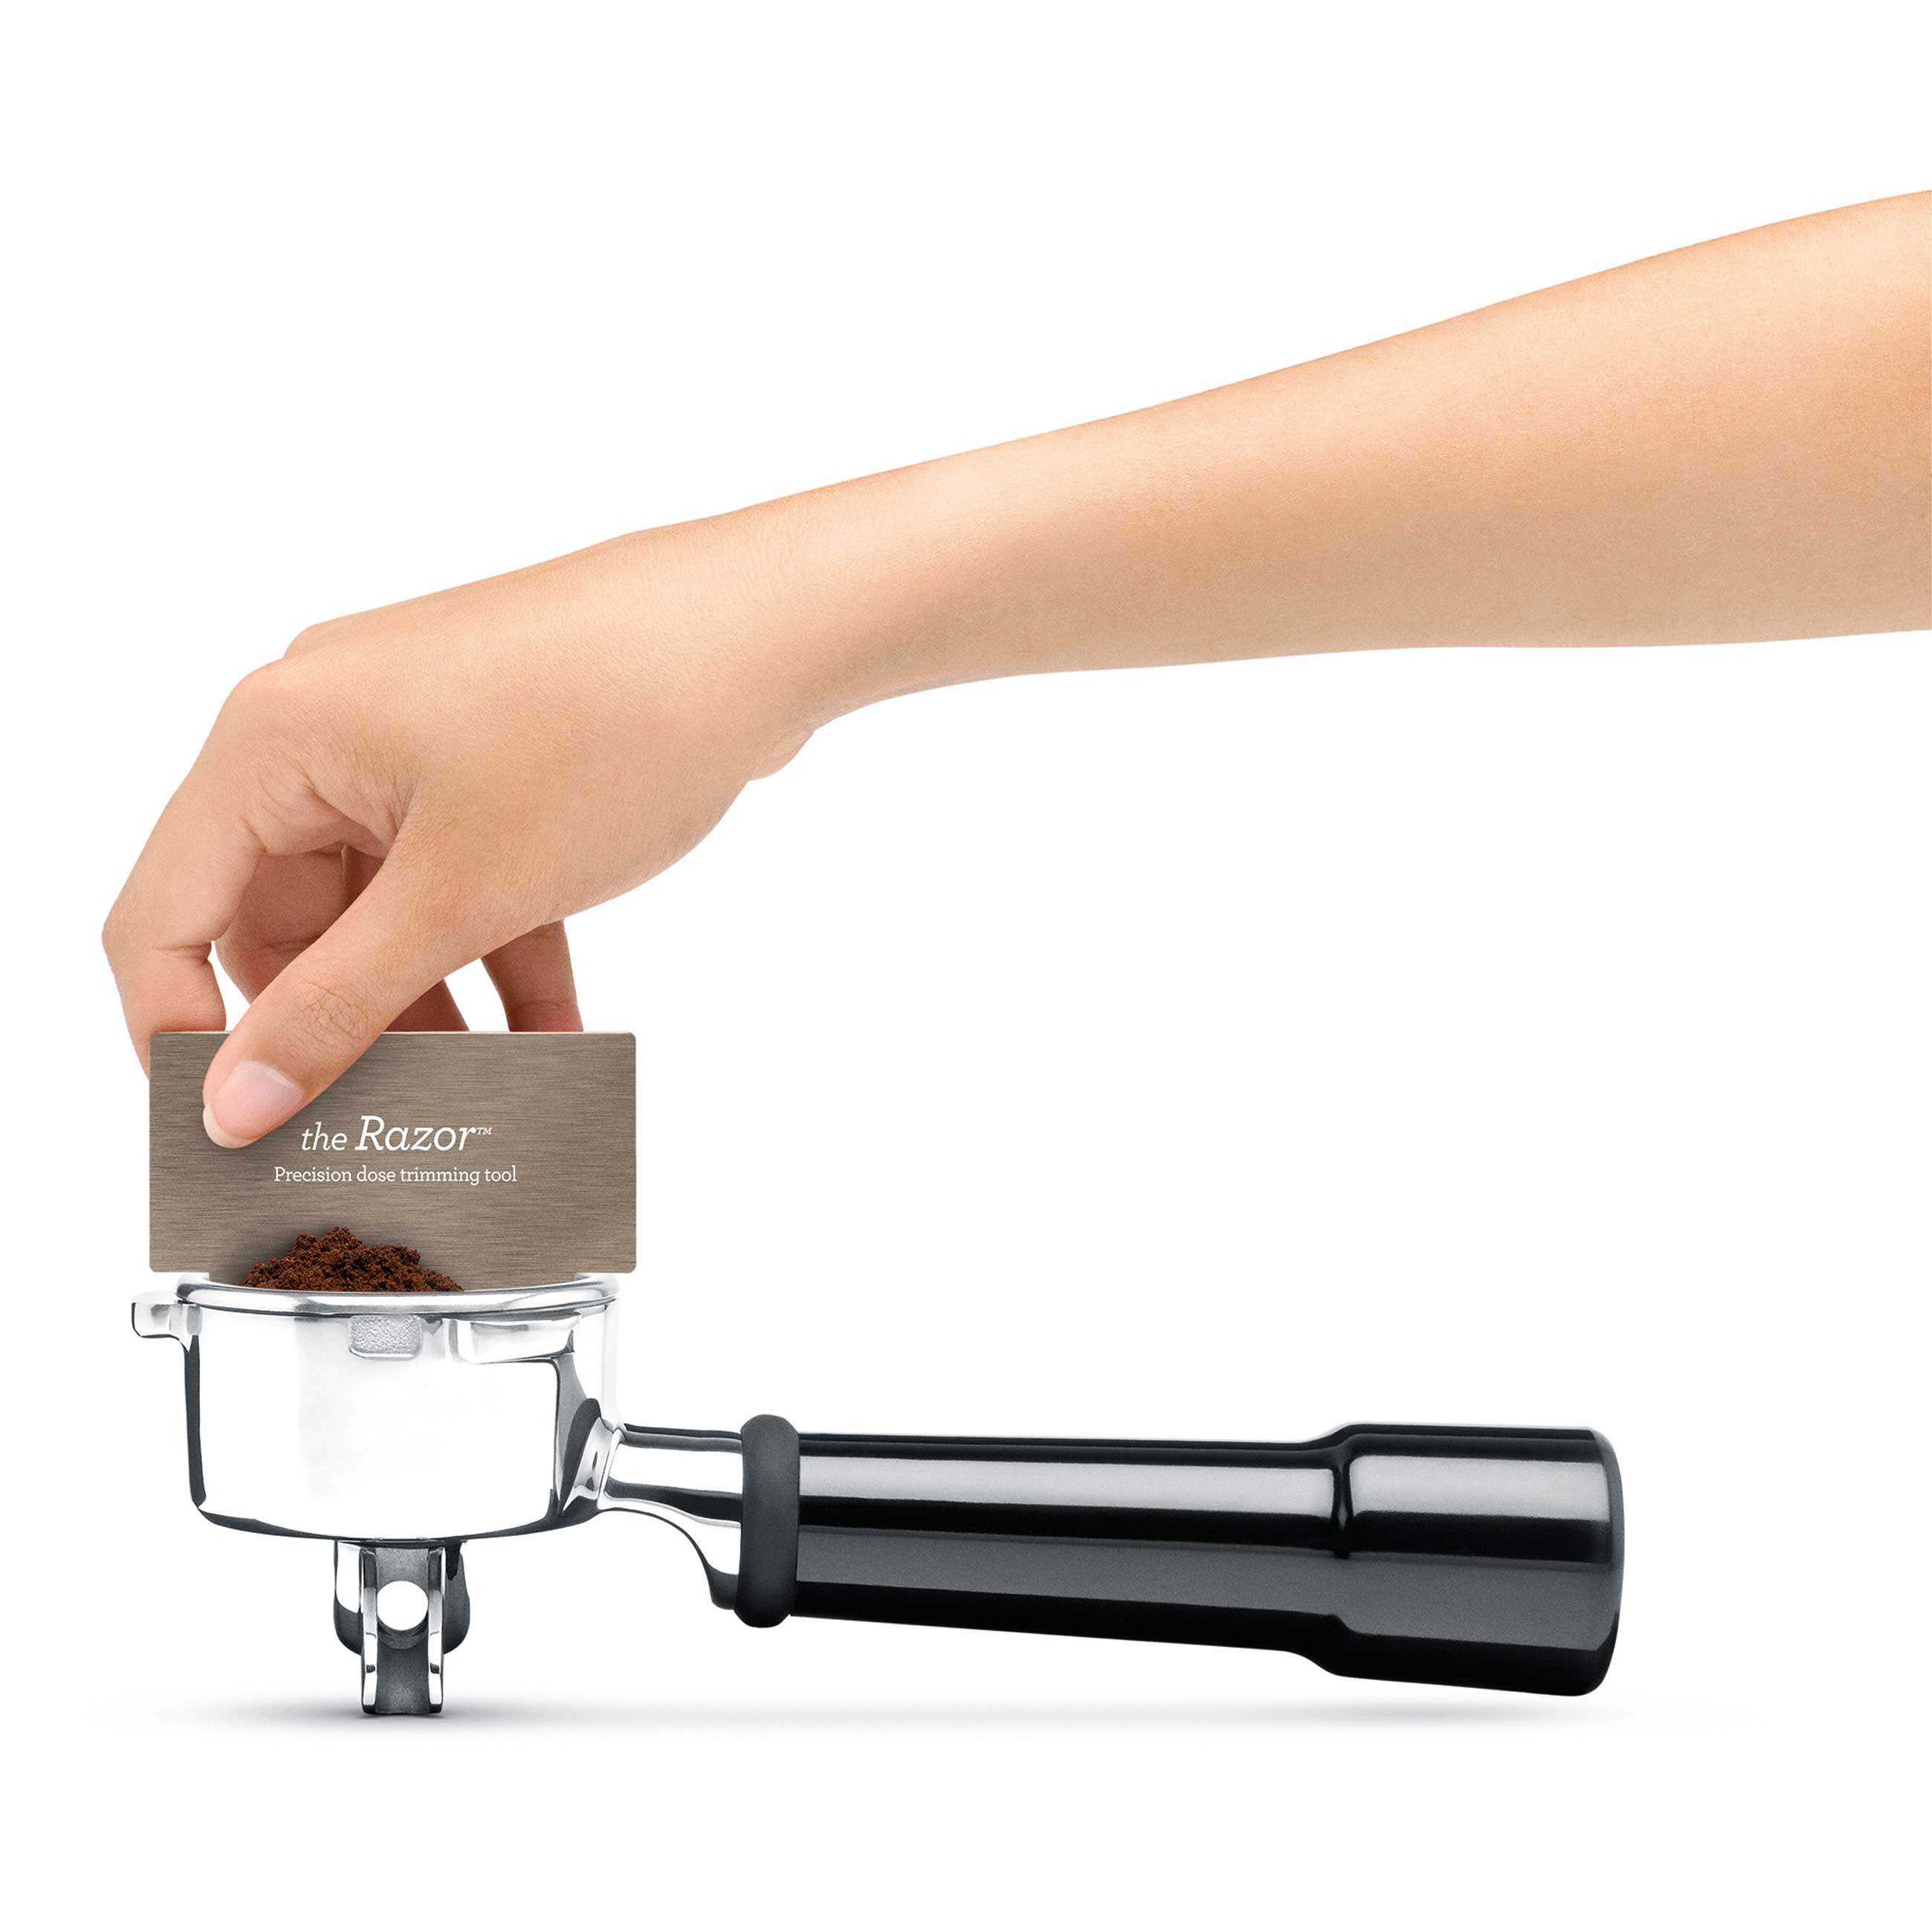  the Duo-Temp™ Pro Espresso in Acciaio inossidabile spazzolato con Dosatore di precisione Razor